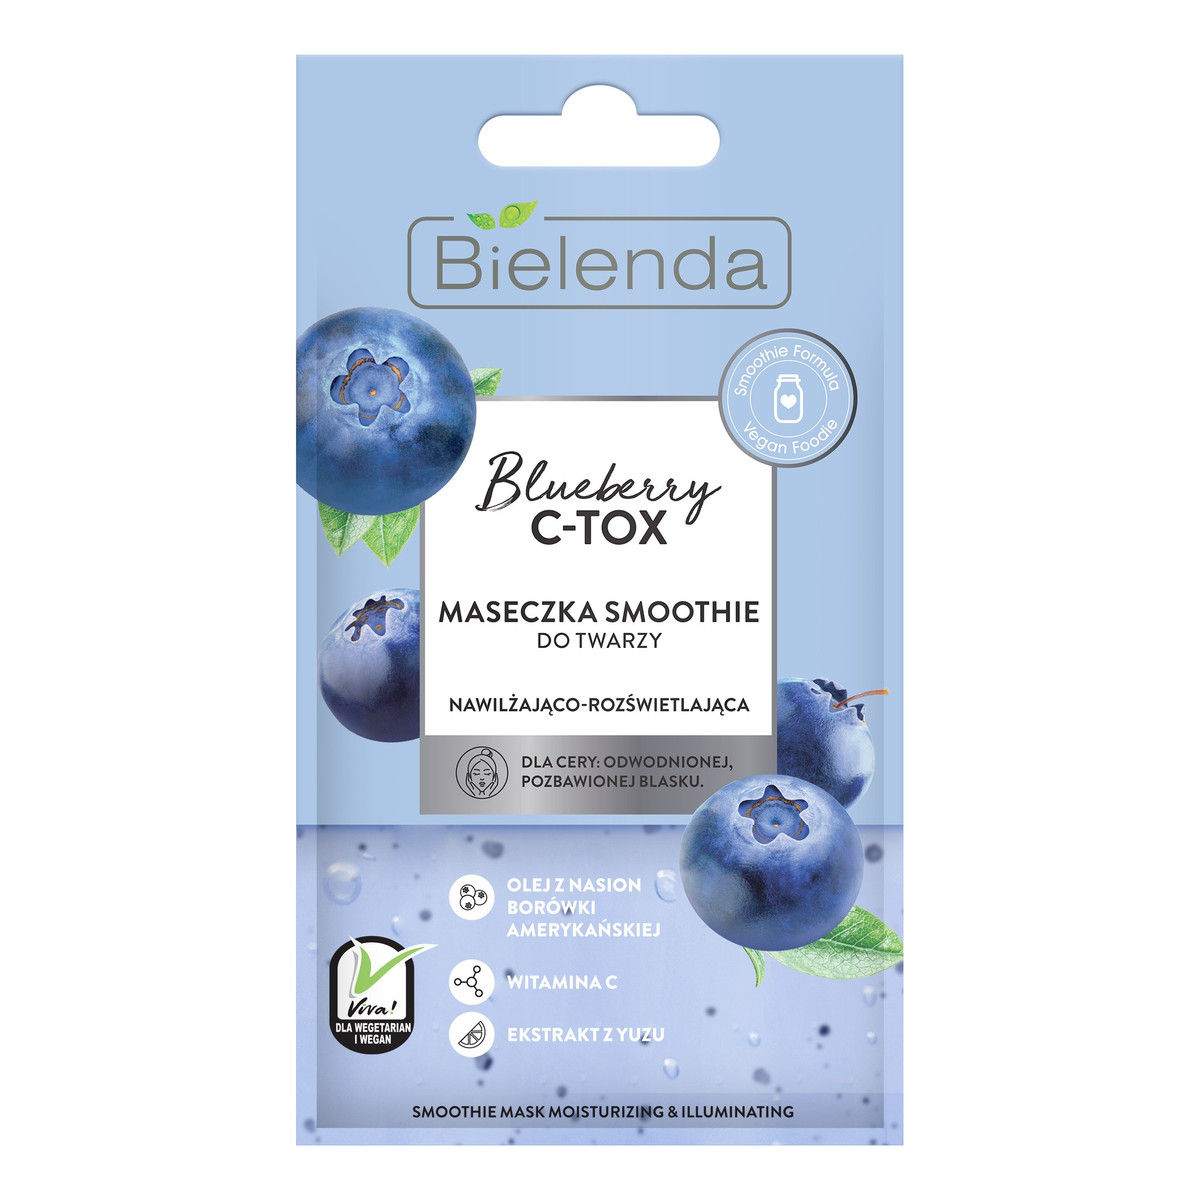 Bielenda C-TOX Blueberry maseczka-smoothie nawilżająco-rozświetlająca 8g